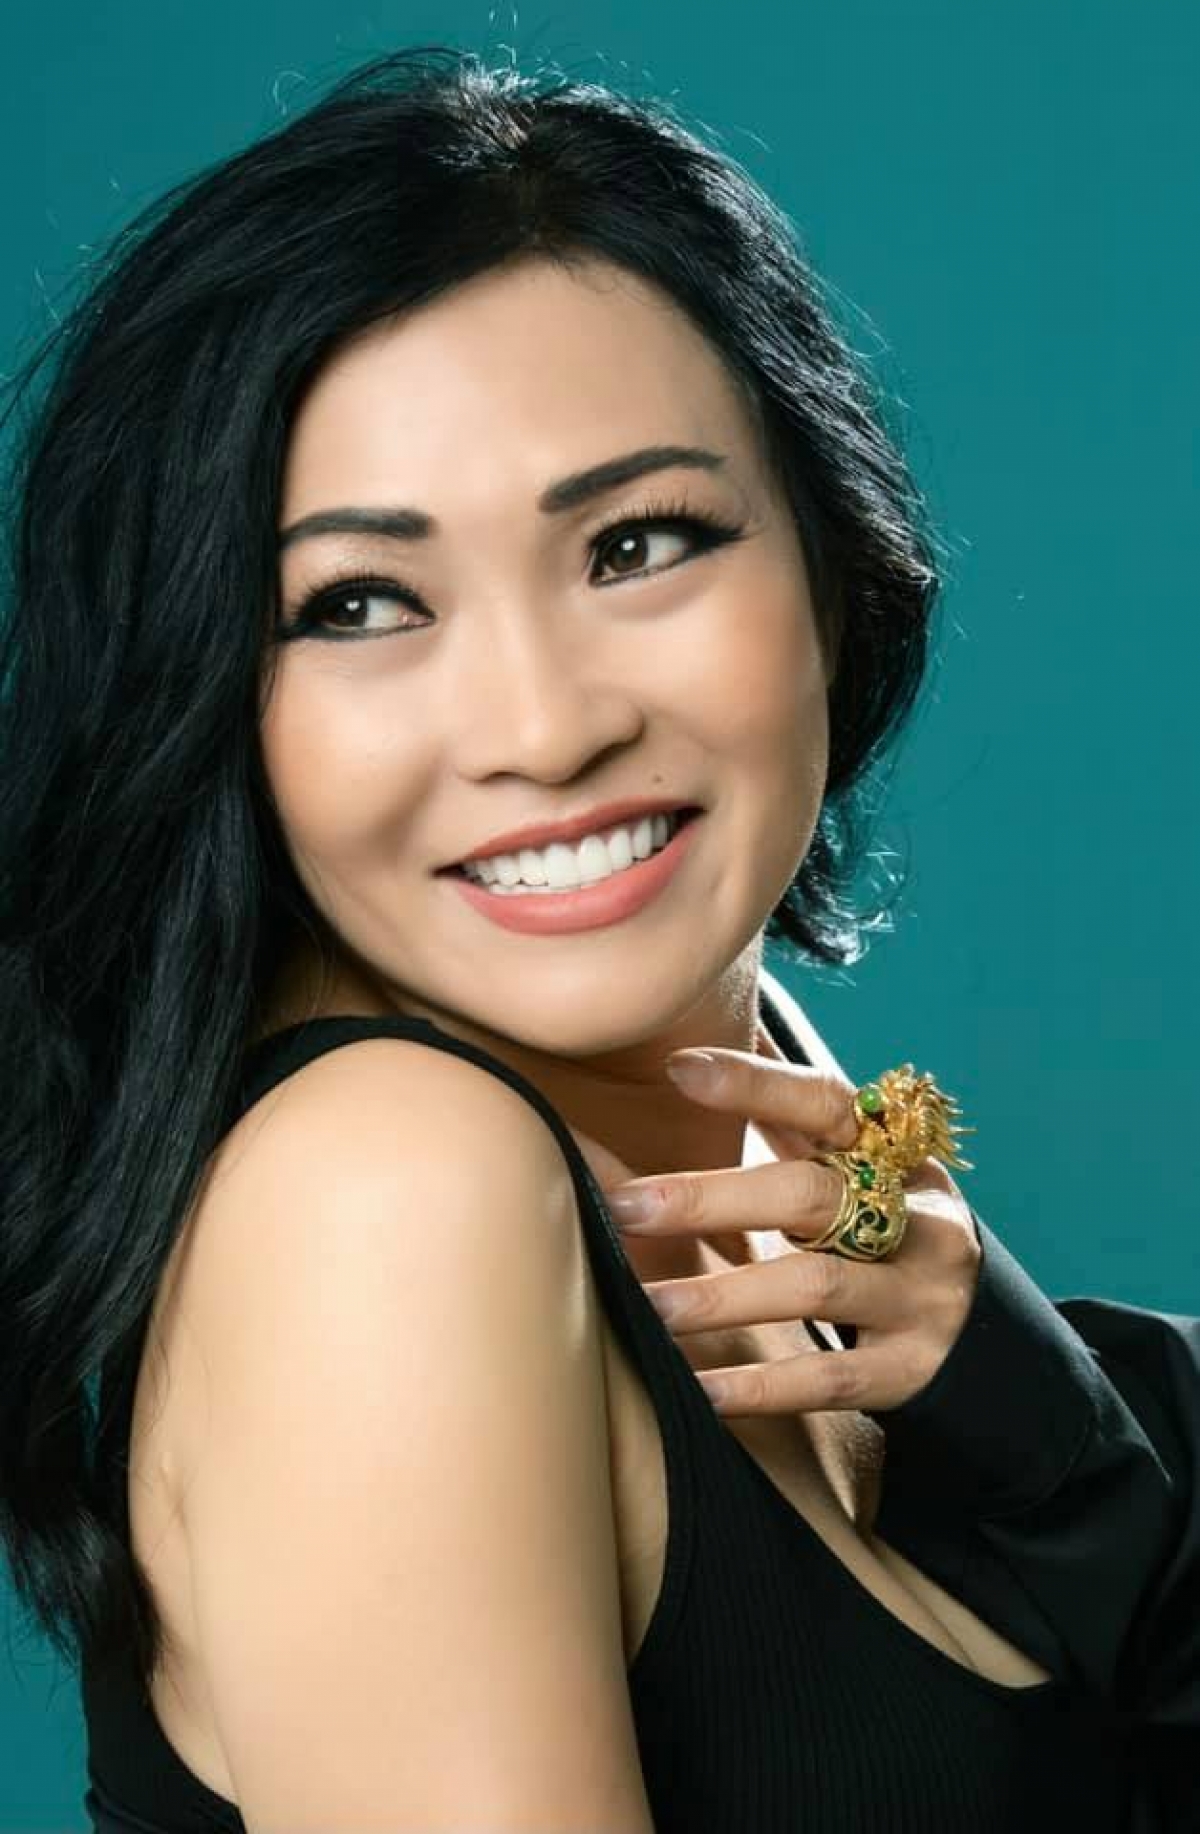 Một Thời Đã Xa là bài hát đình đám gắn liền với sự nghiệp của 'chị Chanh' Phương Thanh